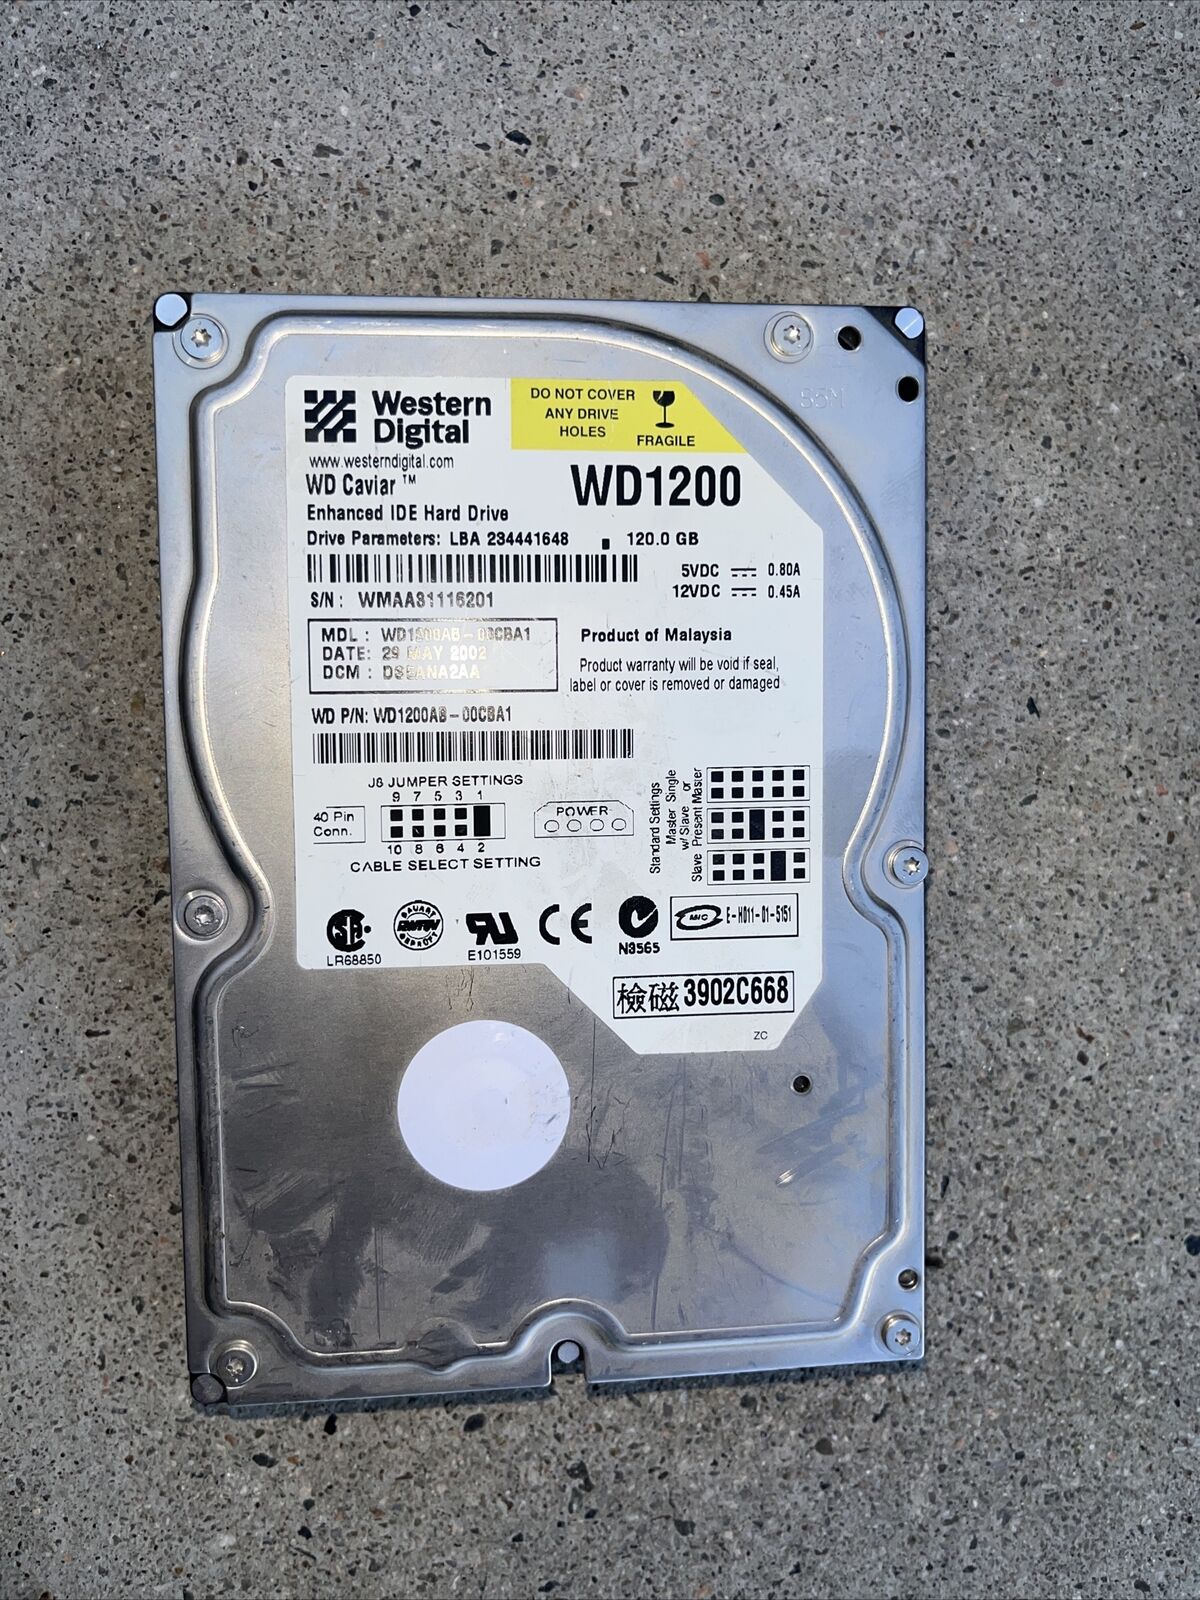 western digital WD1200 Enhance hard drive 120.0 GB